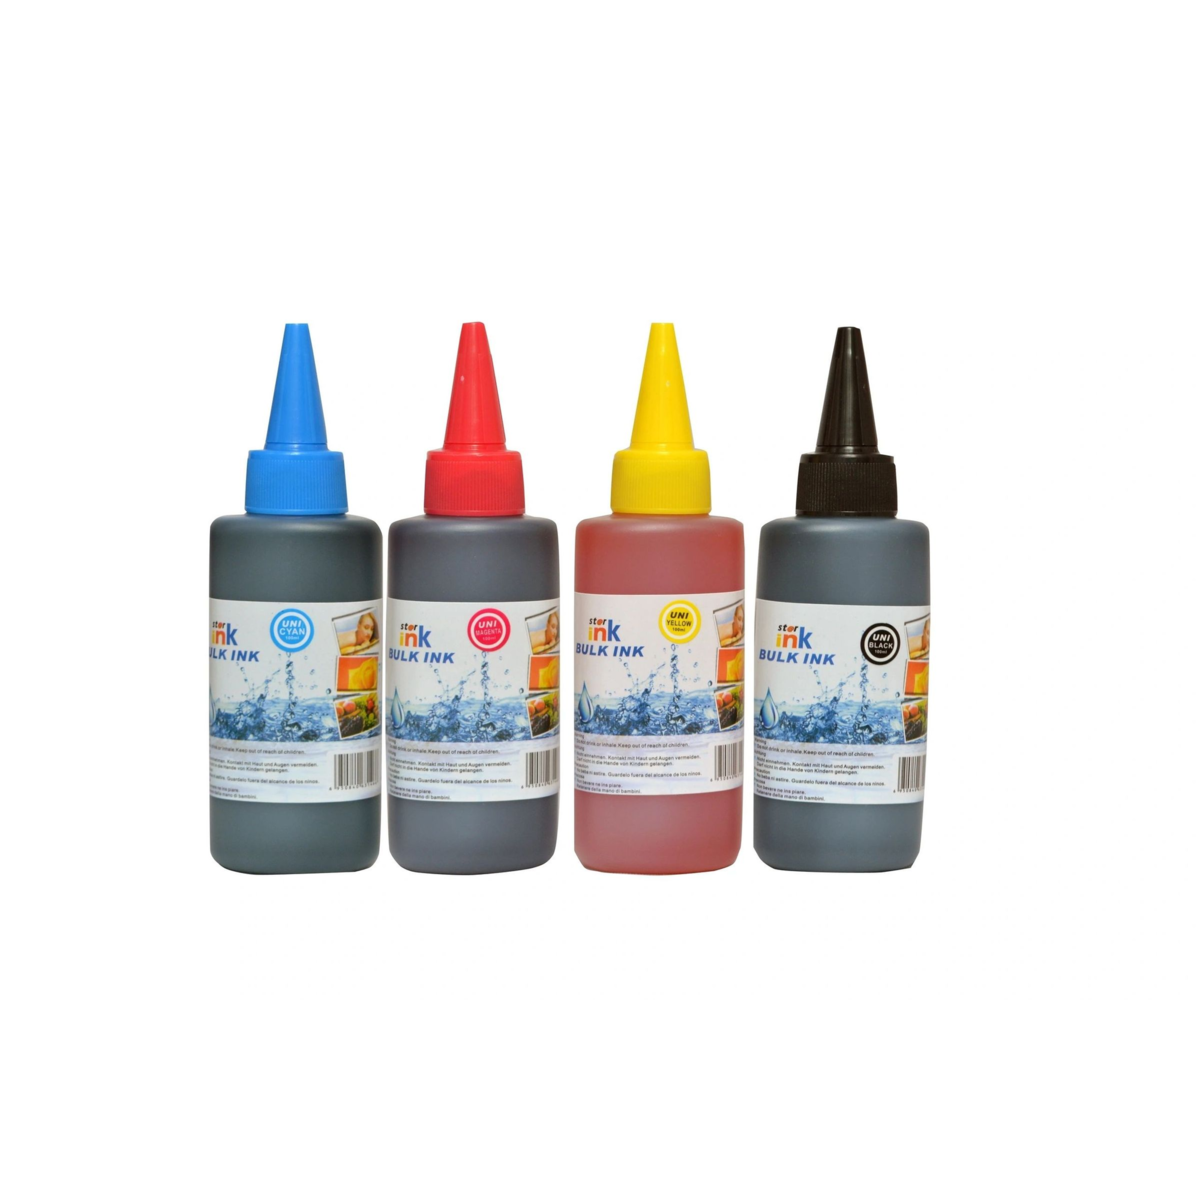 Starink Starink kompatibilní láhve s inkoustem Brother 4 x 100 ml - univerzální (Černá + 3x Barvy)